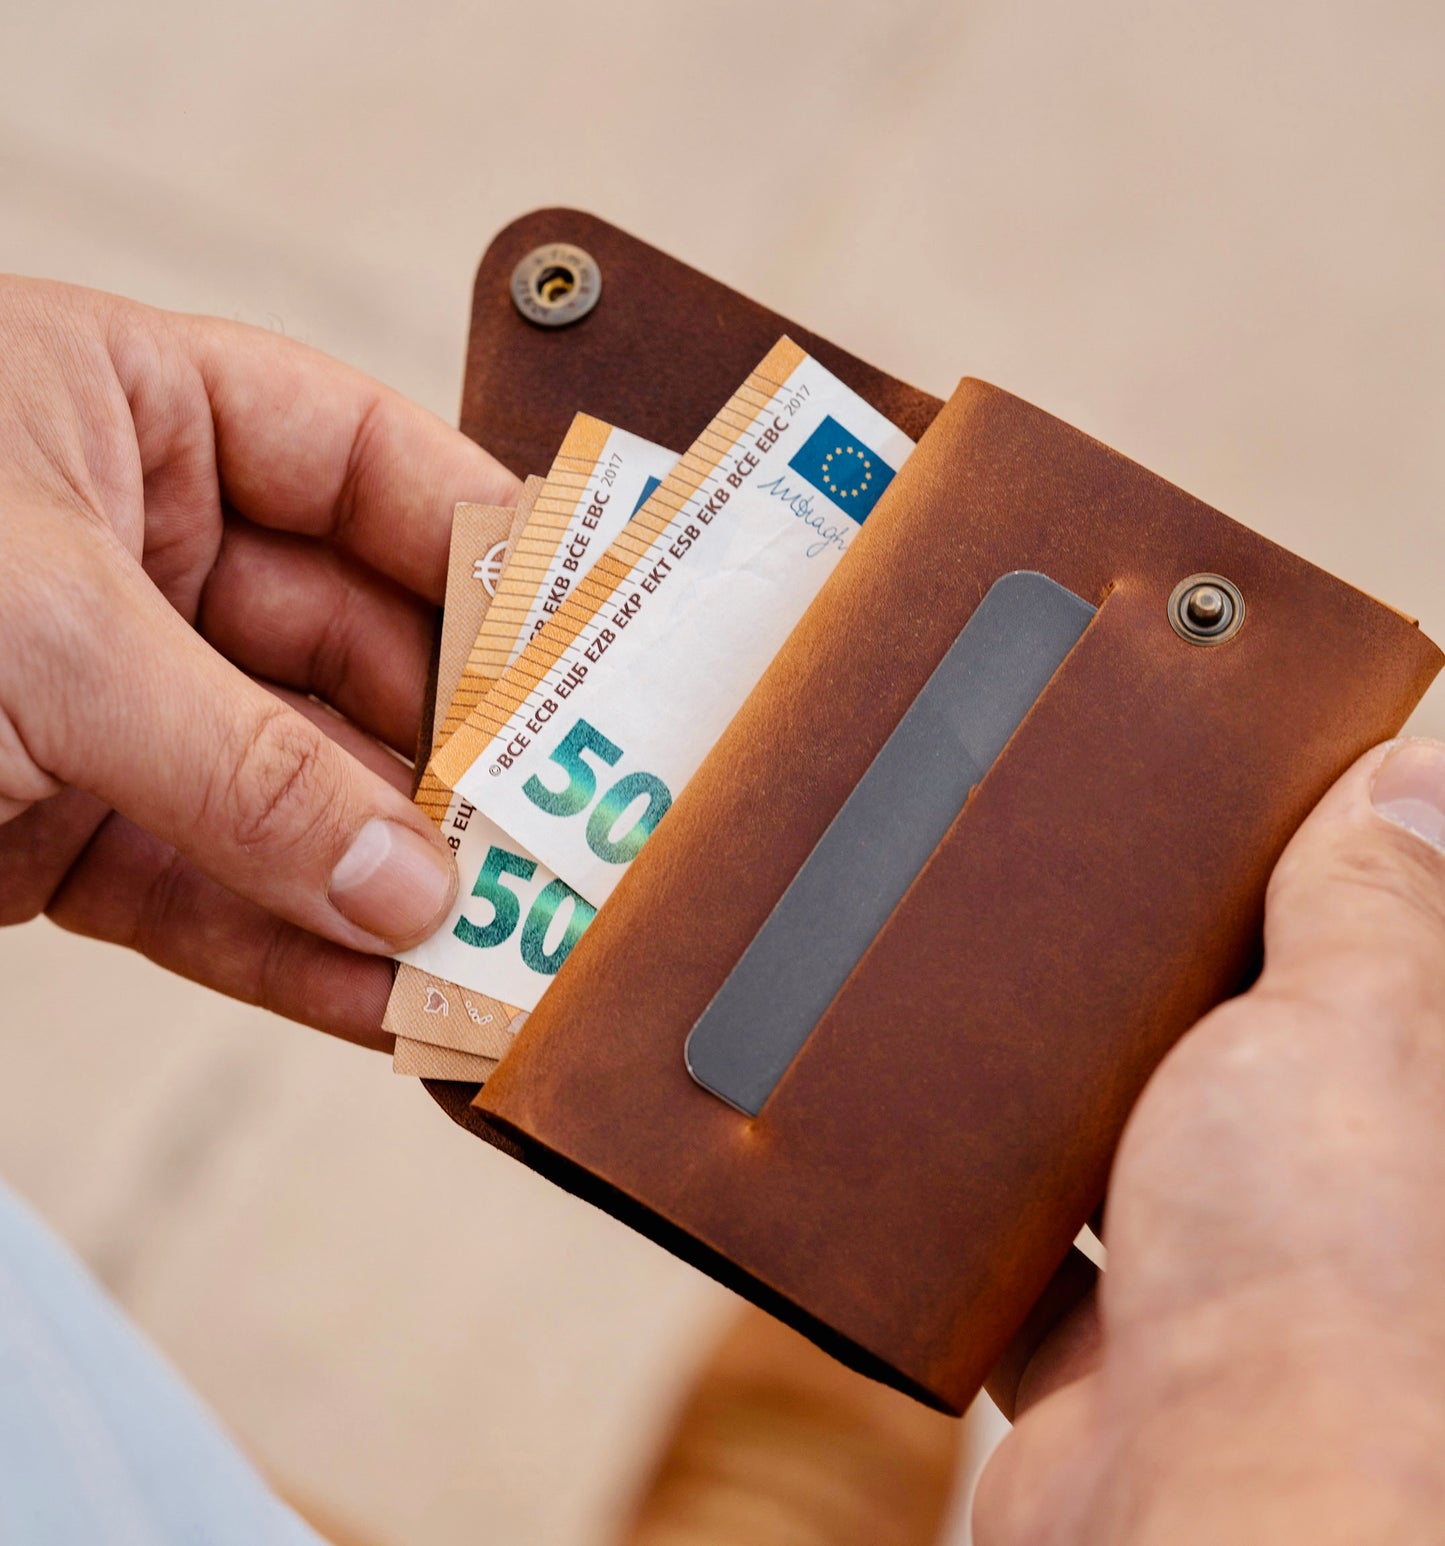 Πορτοφόλι για Ταυτότητα, Κάρτες, Χαρτονομίσματα & Κέρματα "ID Wallet"